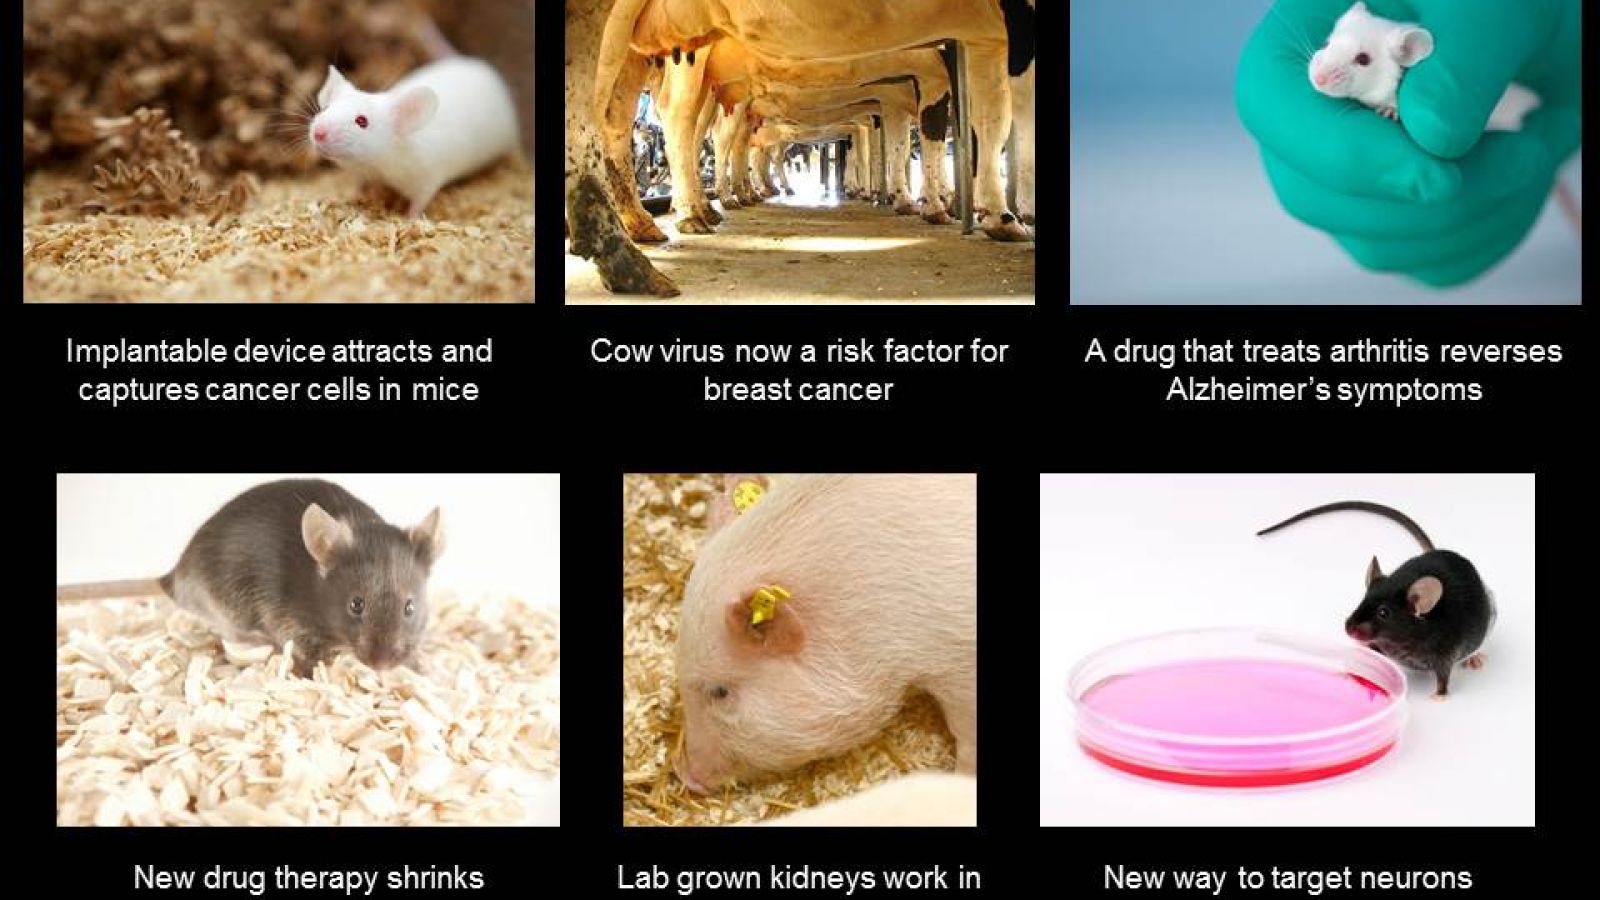 Lab grown kidneys work in animals